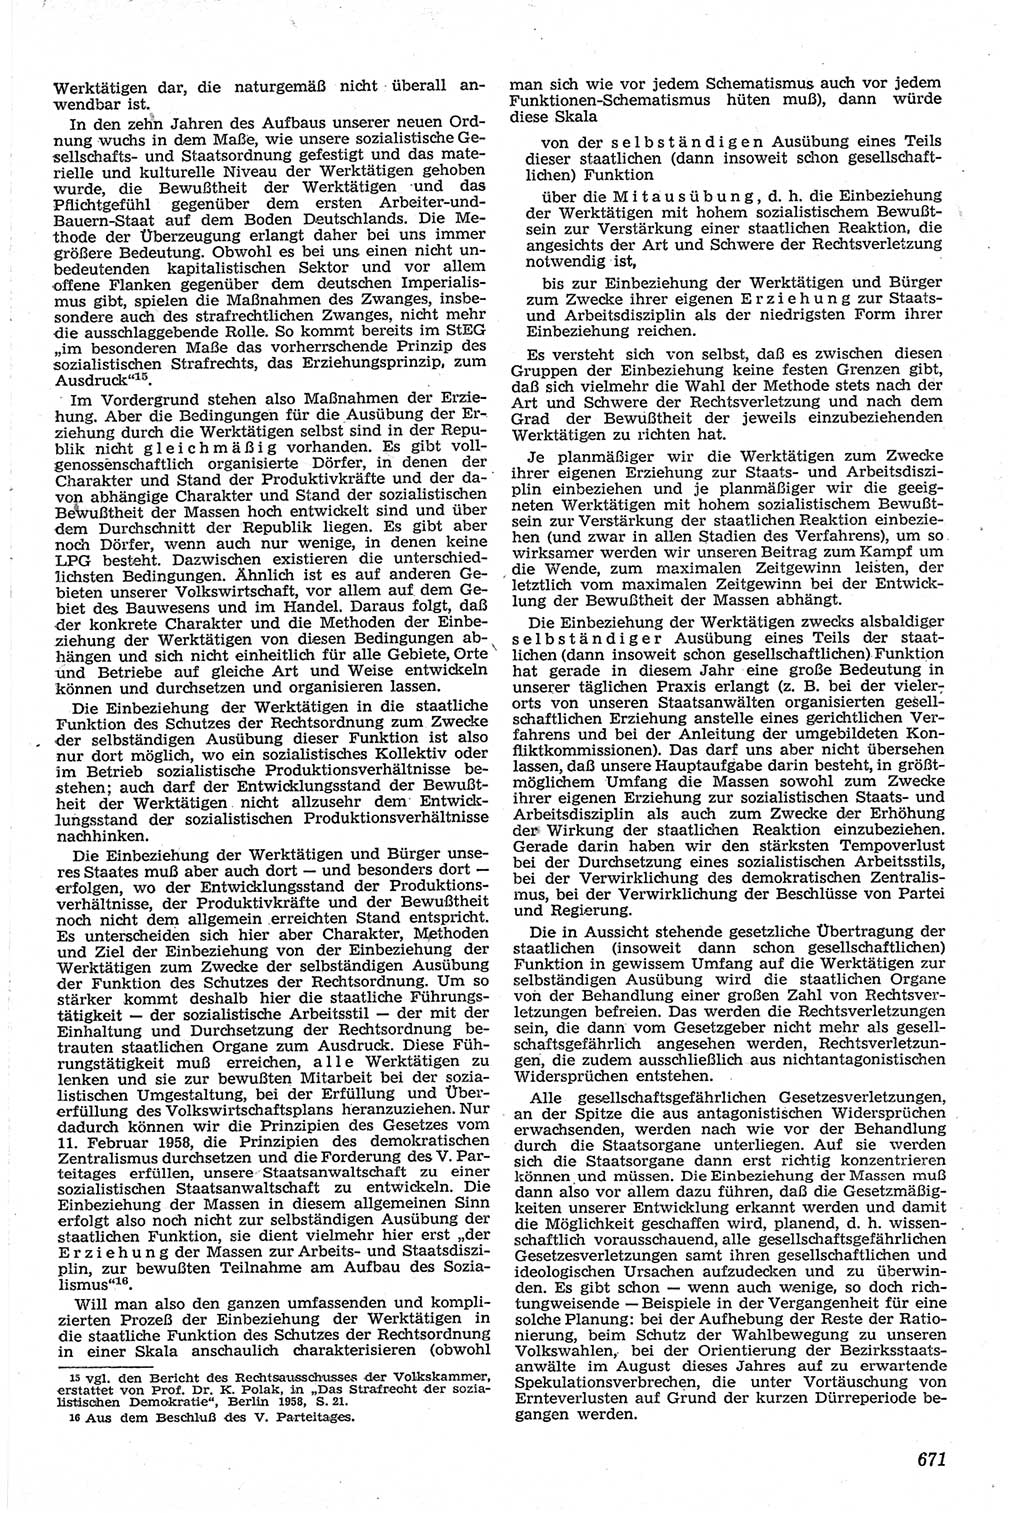 Neue Justiz (NJ), Zeitschrift für Recht und Rechtswissenschaft [Deutsche Demokratische Republik (DDR)], 13. Jahrgang 1959, Seite 671 (NJ DDR 1959, S. 671)